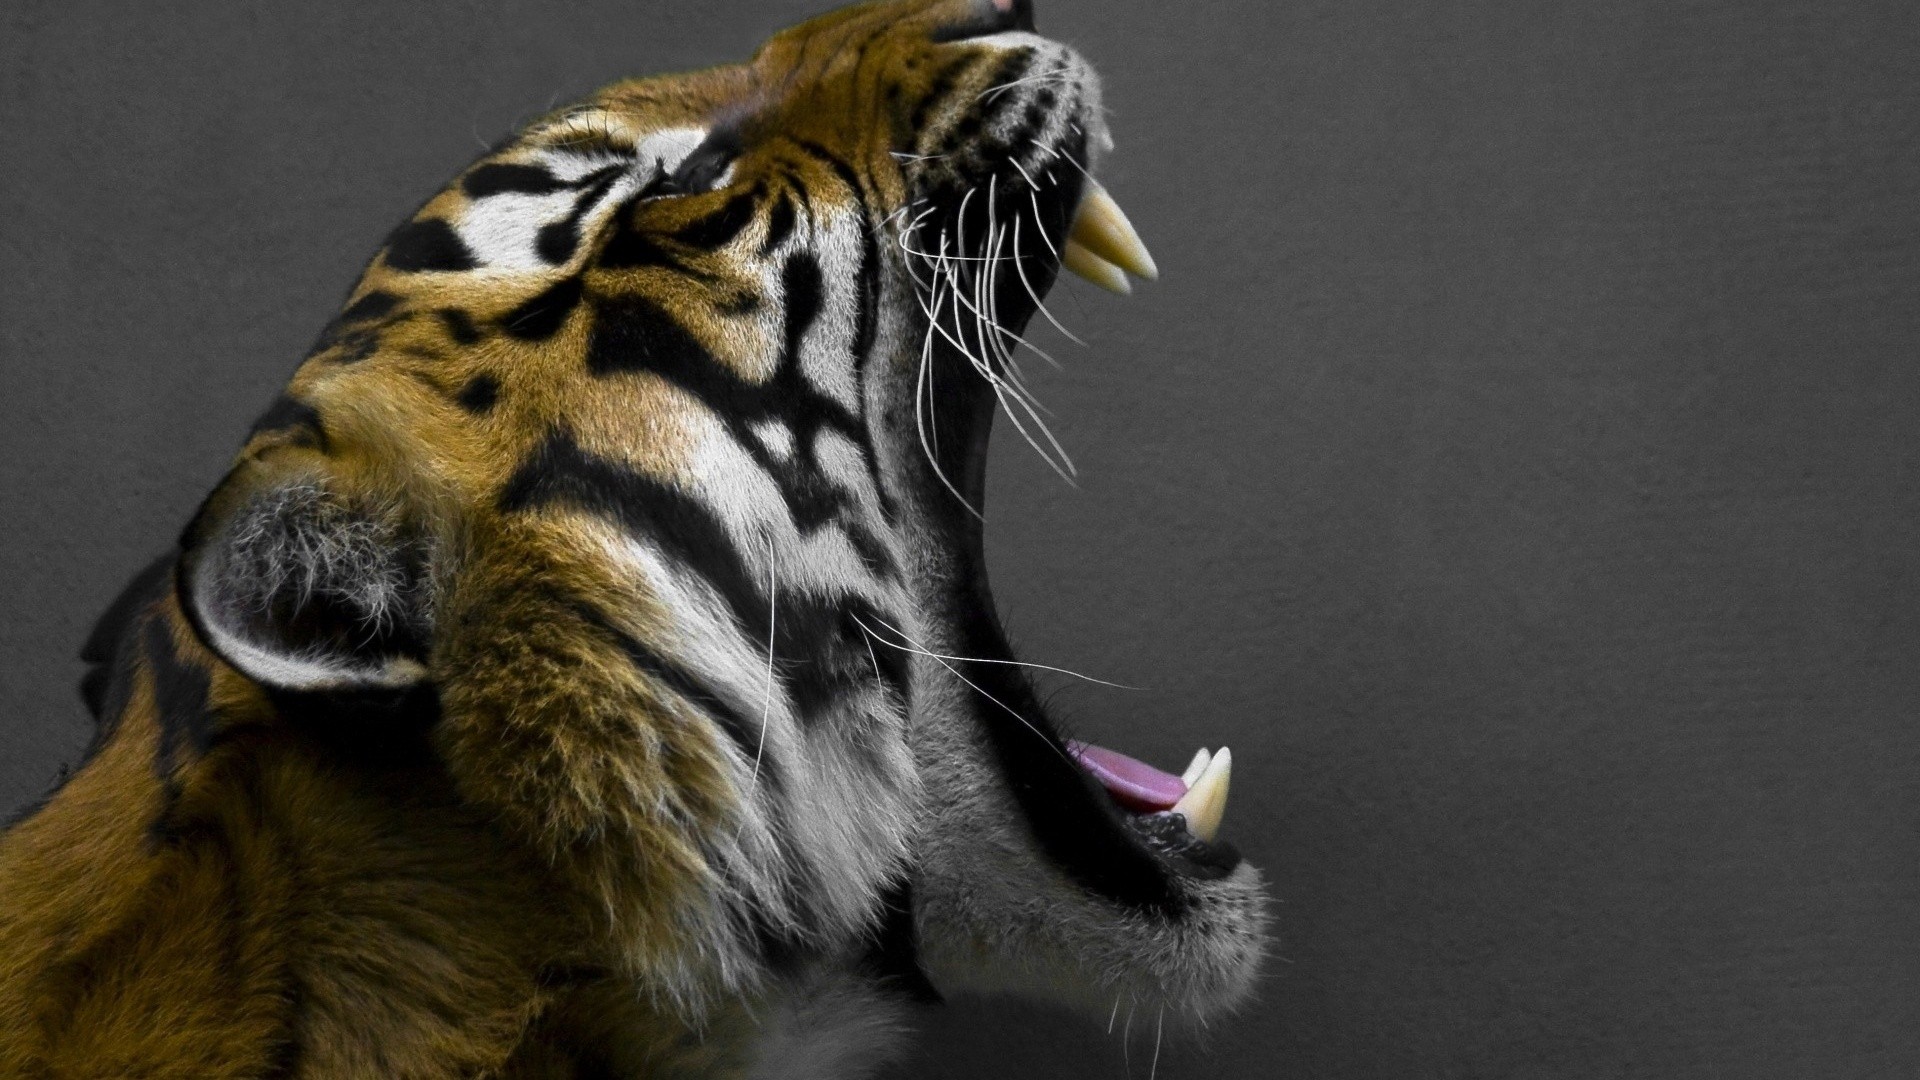 General 1920x1080 tiger animals big cats feline teeth mammals